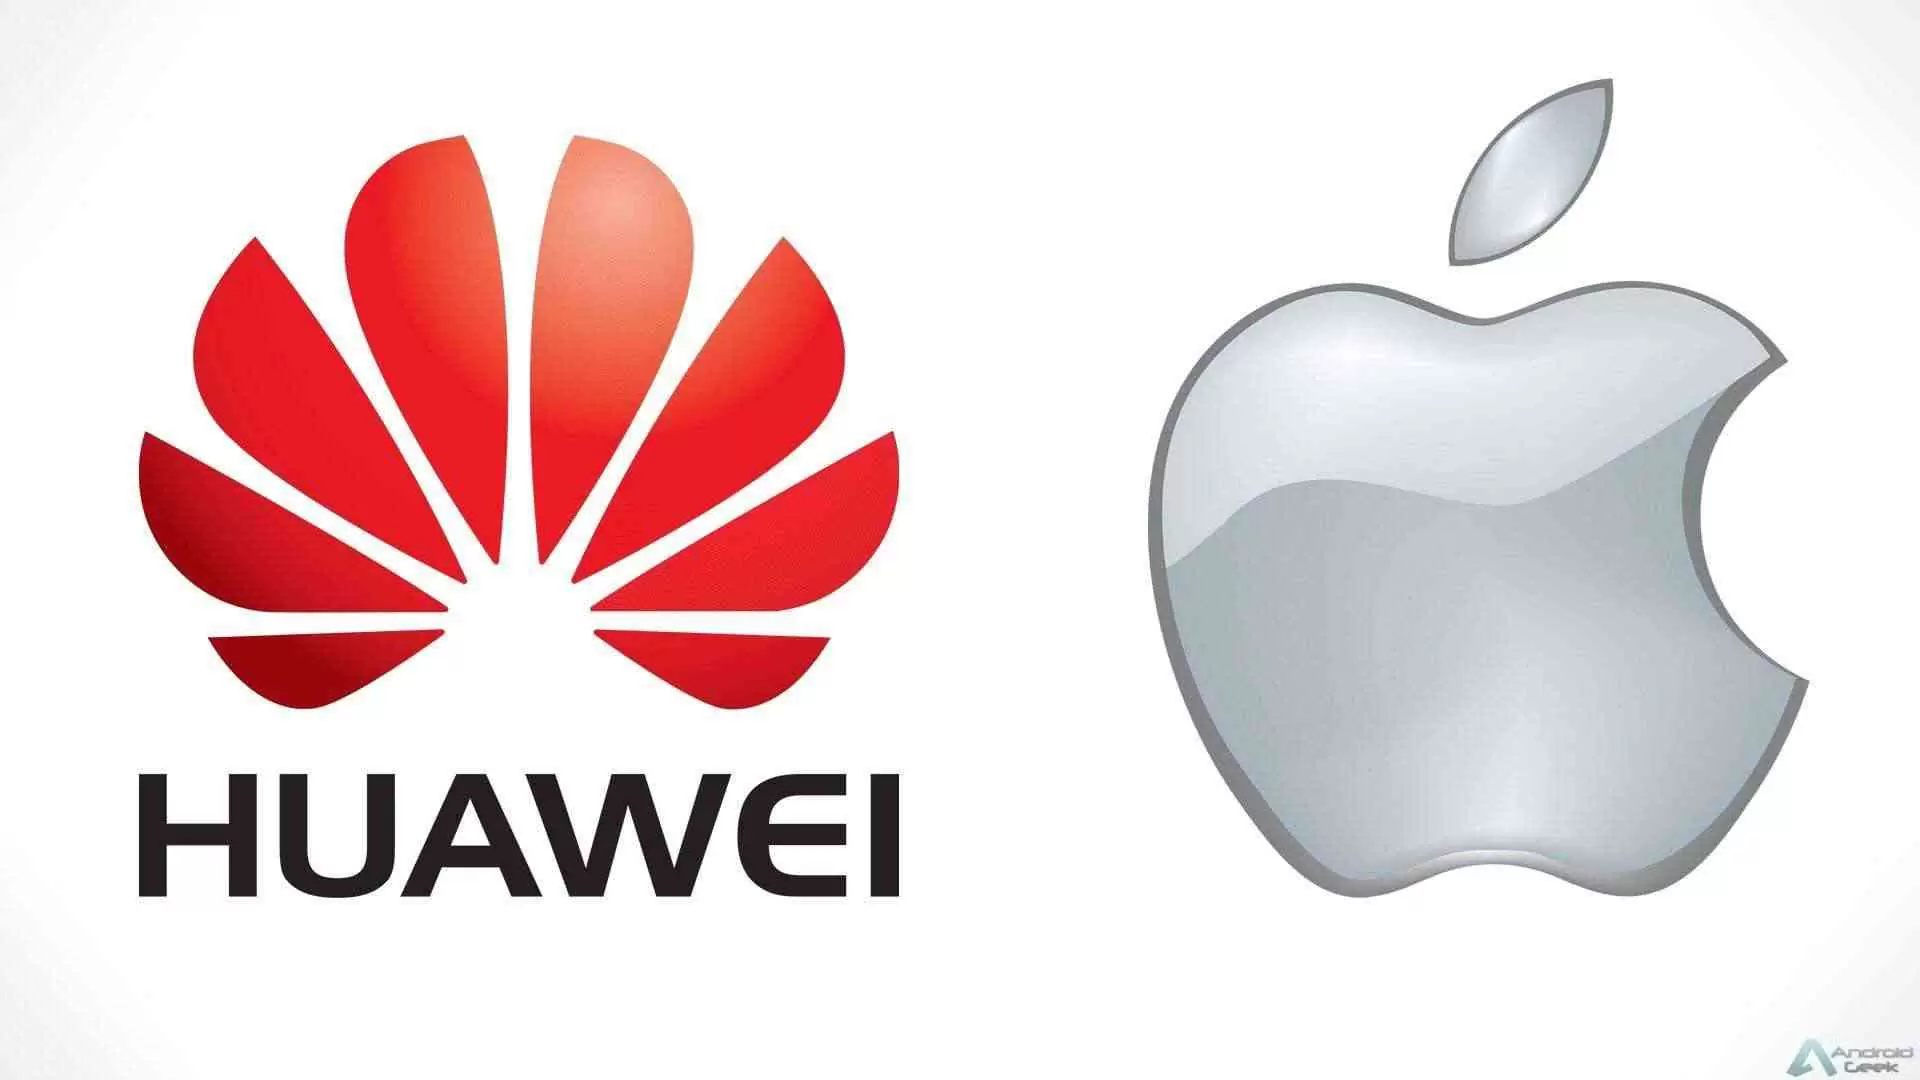 Vendas da Apple no primeiro trimestre em declínio ao contrário da Huawei 11